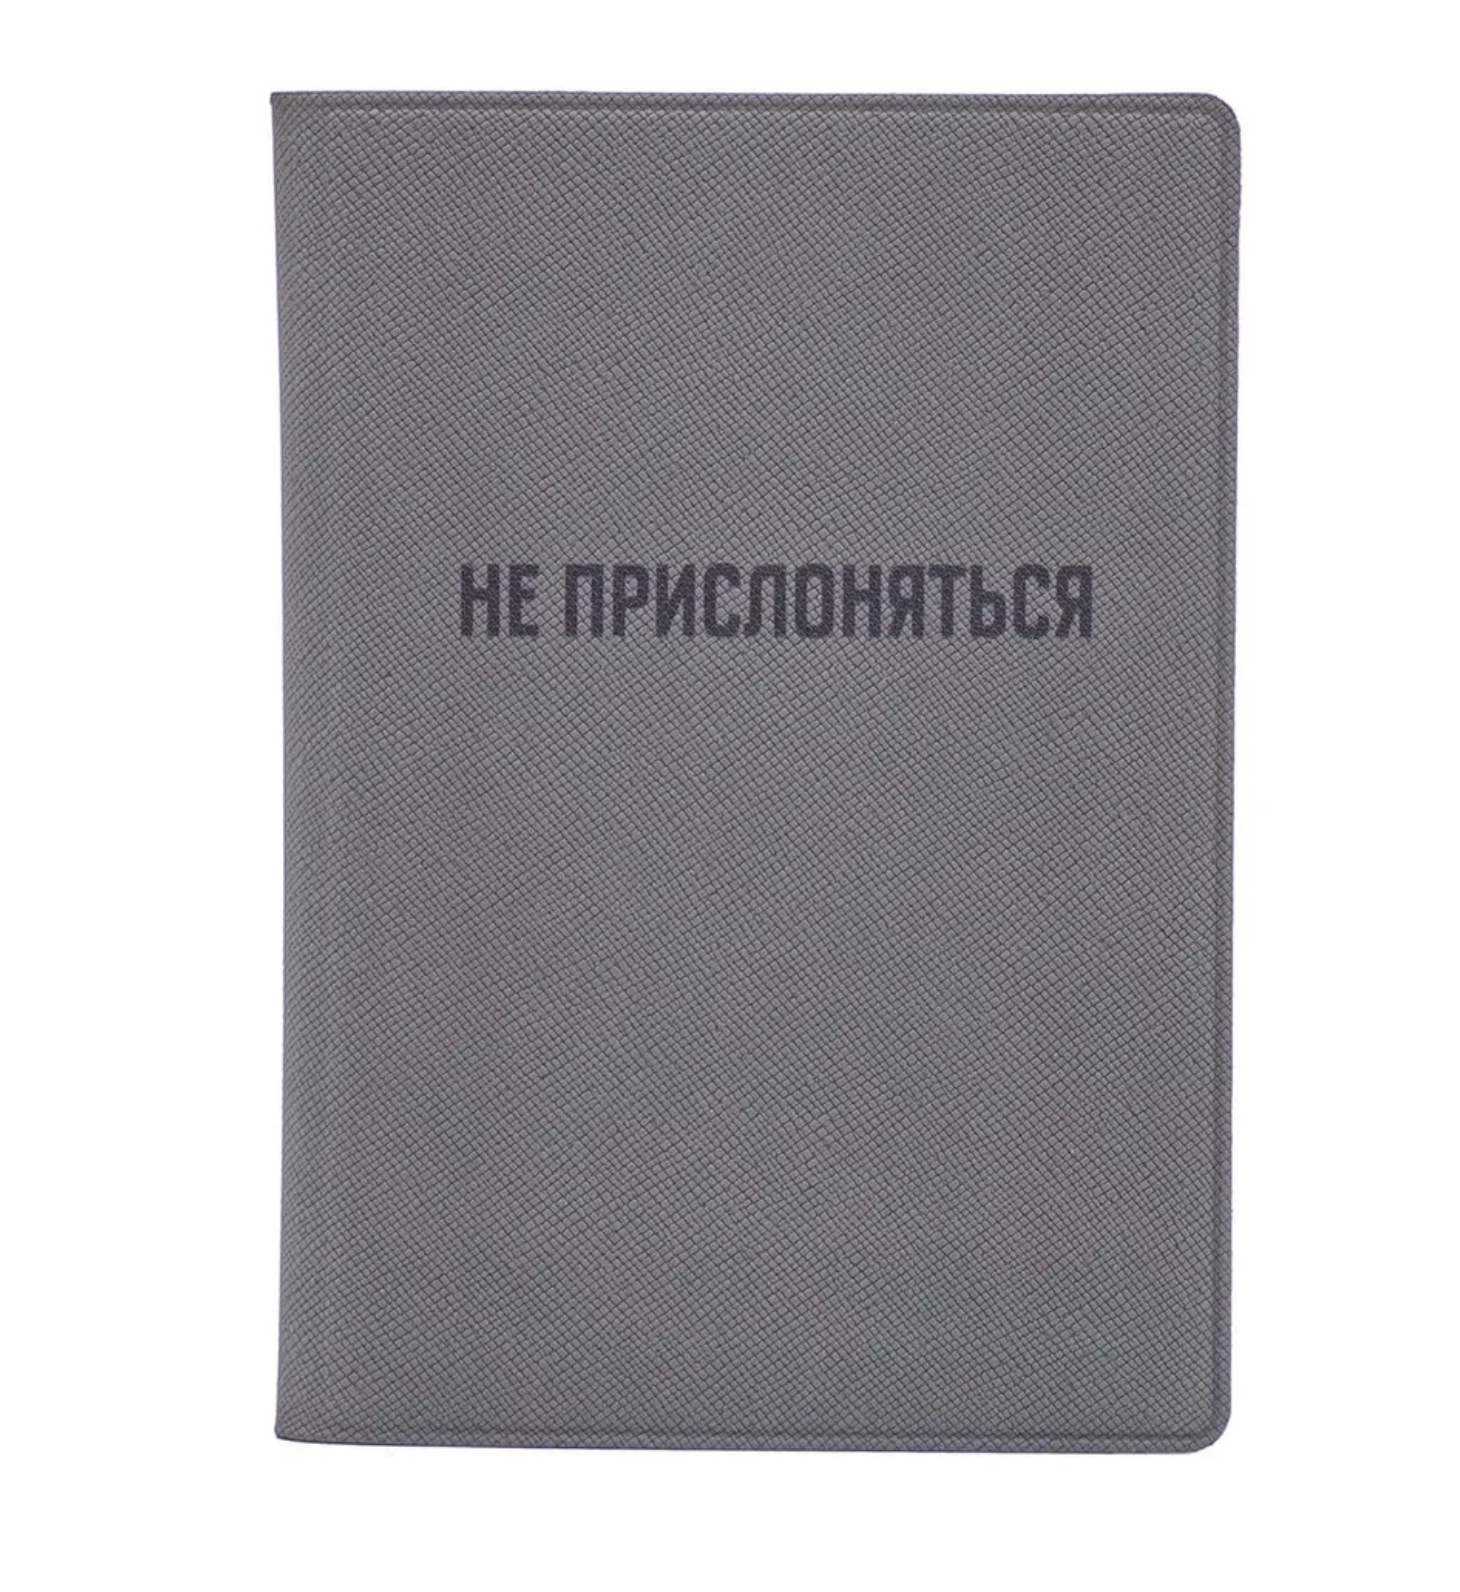 Обложка для паспорта унисекс Московский транспорт Не прислоняться серая